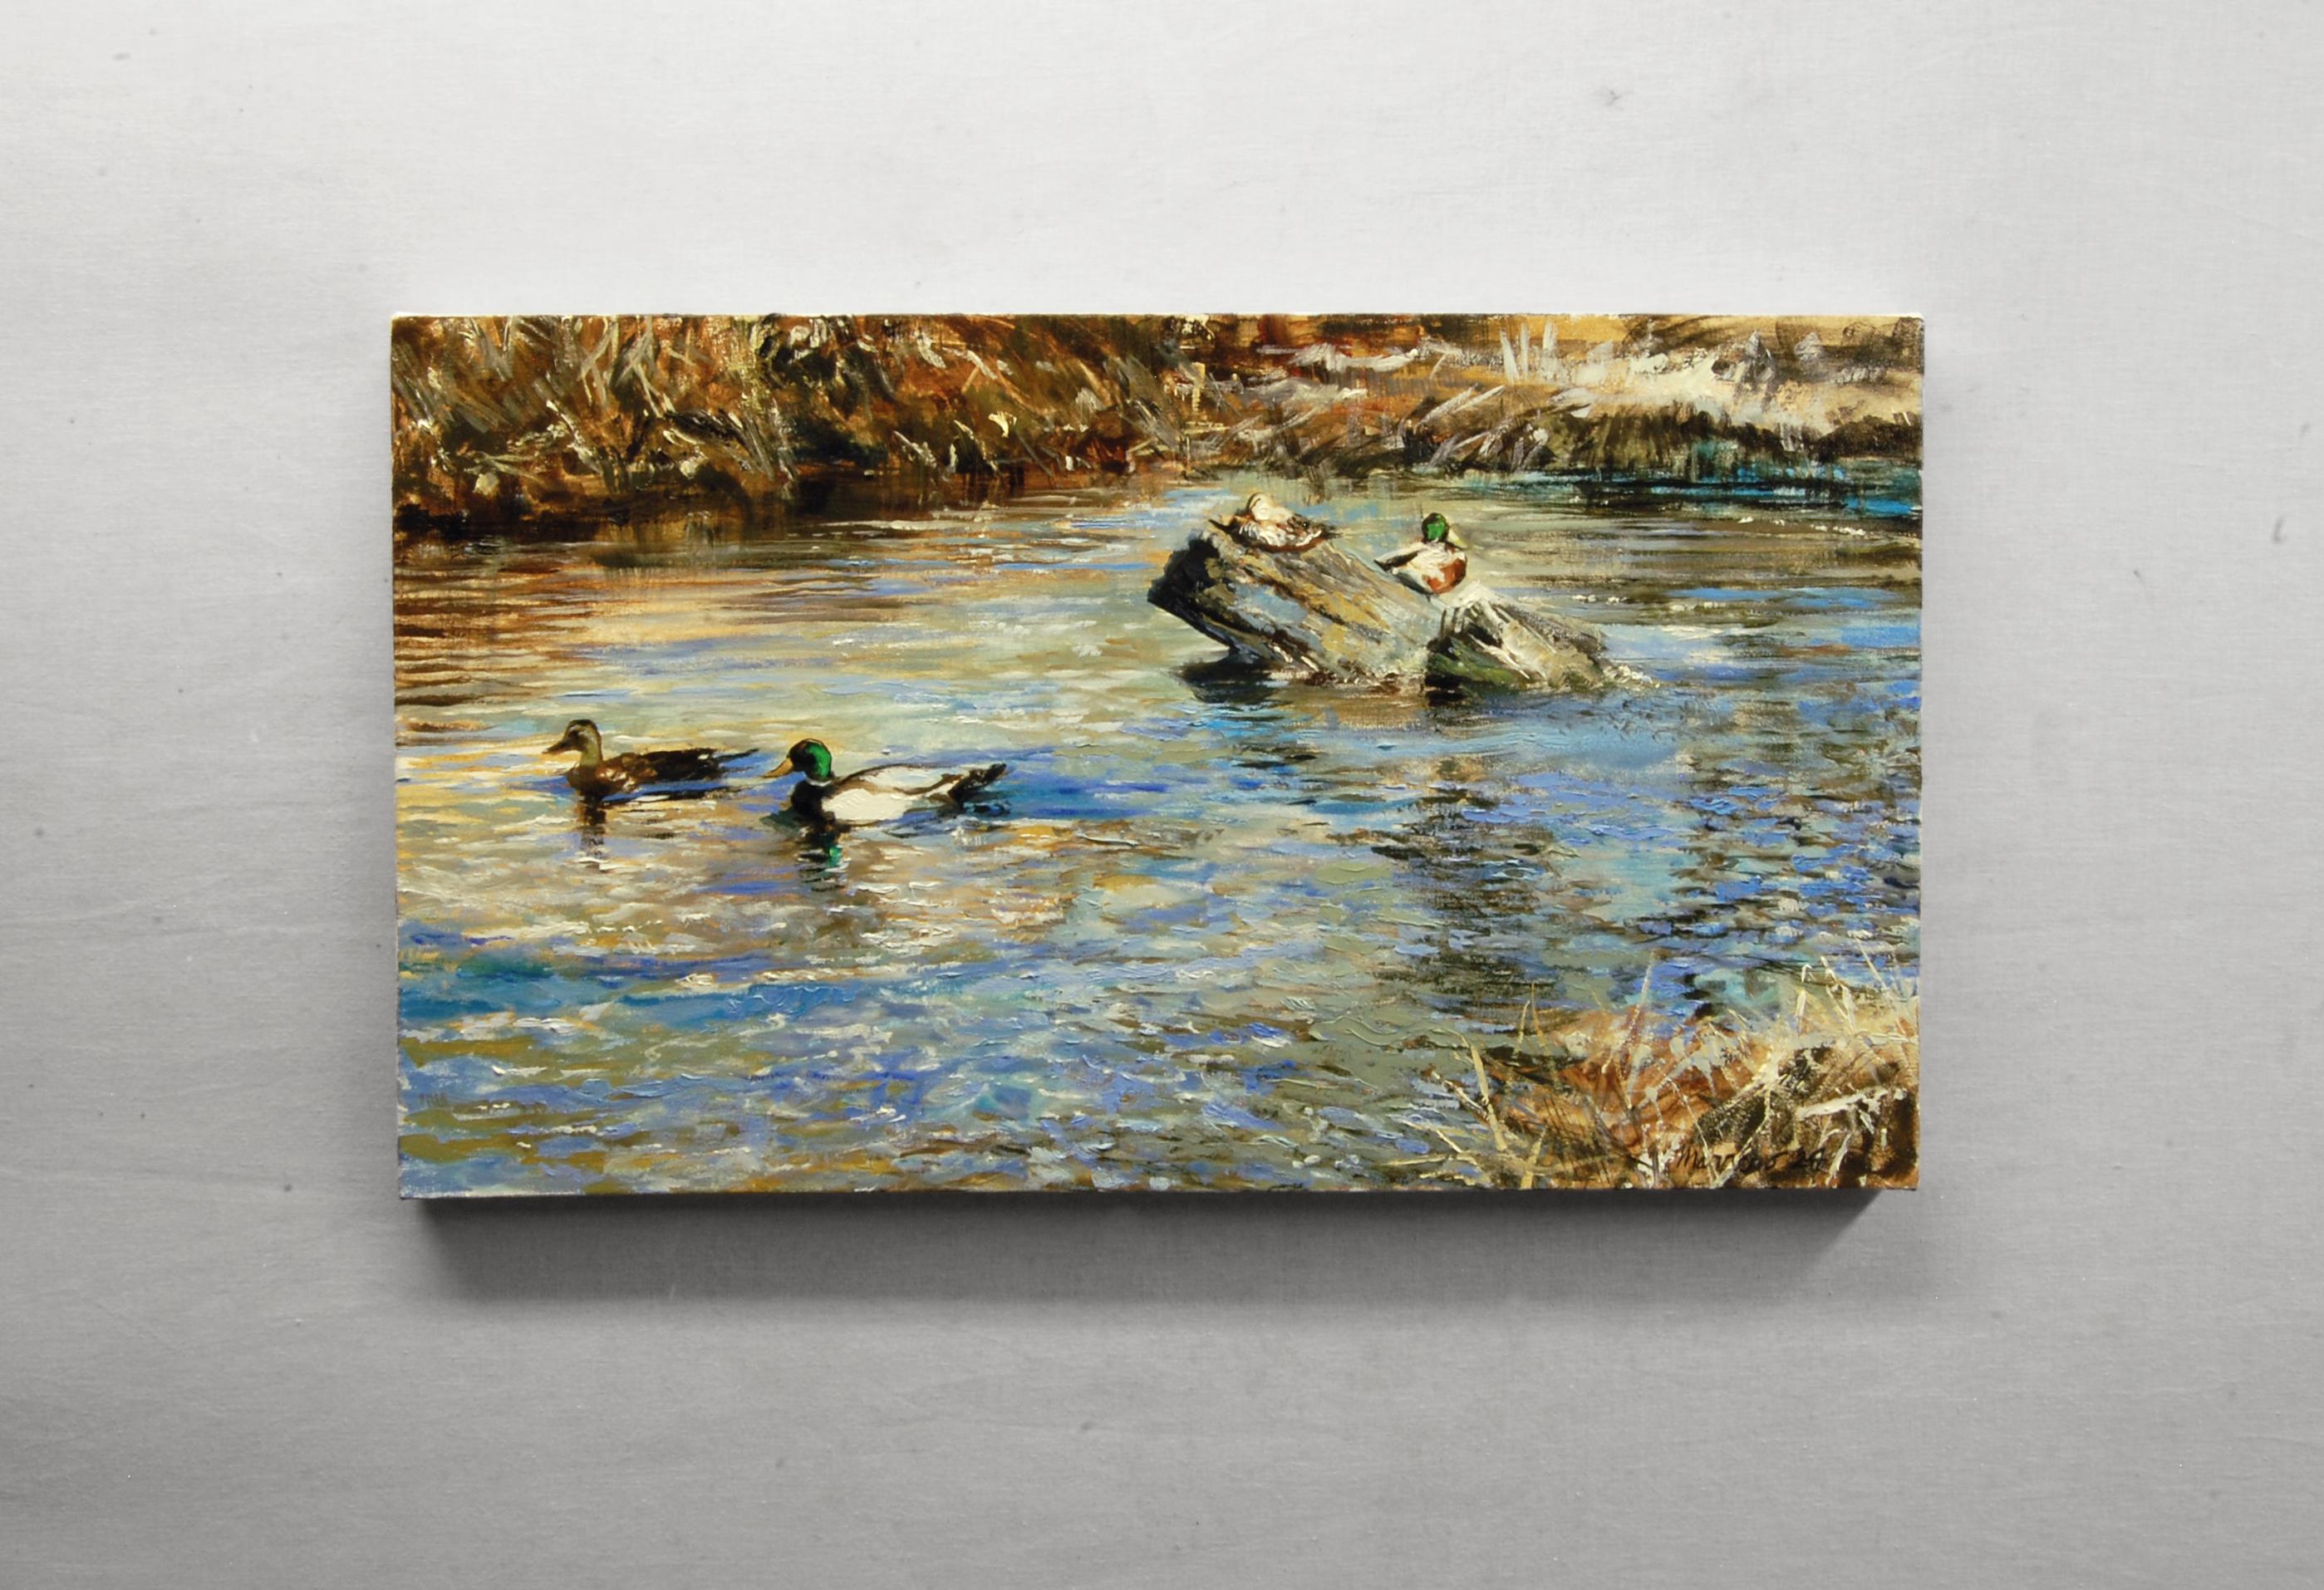 <p>Kommentare des Künstlers<br>Stockenten spiegeln sich auf dem schnell fließenden Wasser, und ein Paar gleitet anmutig neben einer dritten Ente, die auf einem Baumstamm sitzt. Dynamische Pinselführung und Spachteltechniken fangen das sanfte